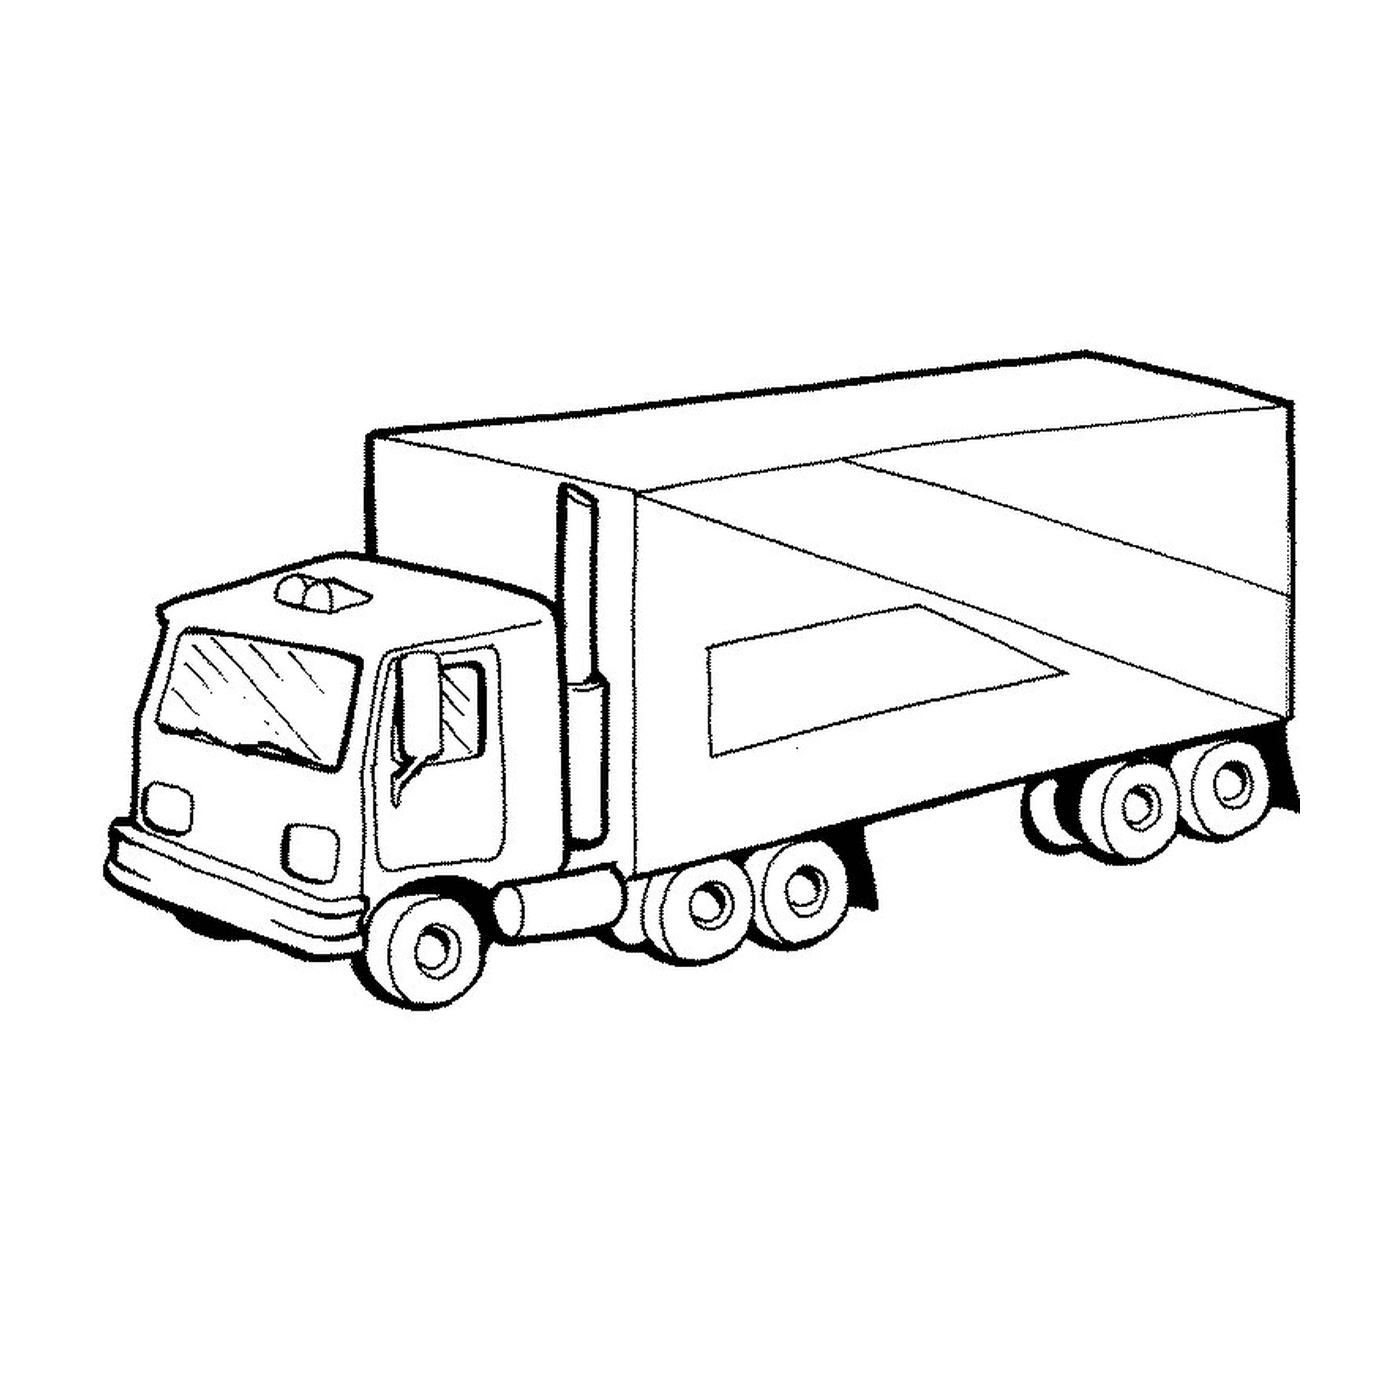  Un camión 